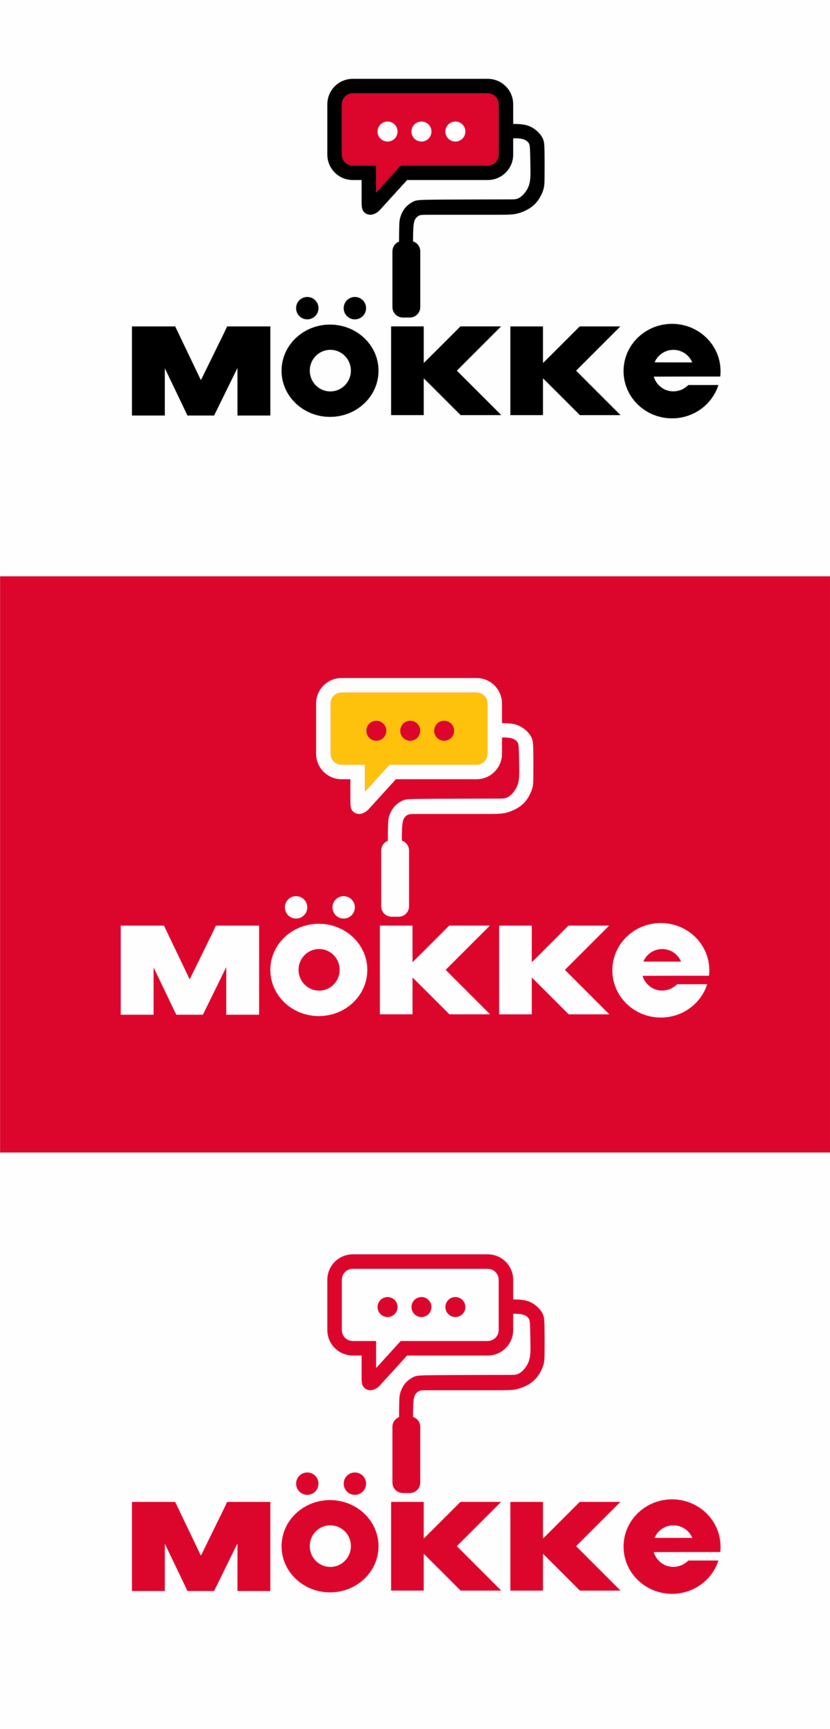 привет mokke - Разработка графического элемента к основному логотипу